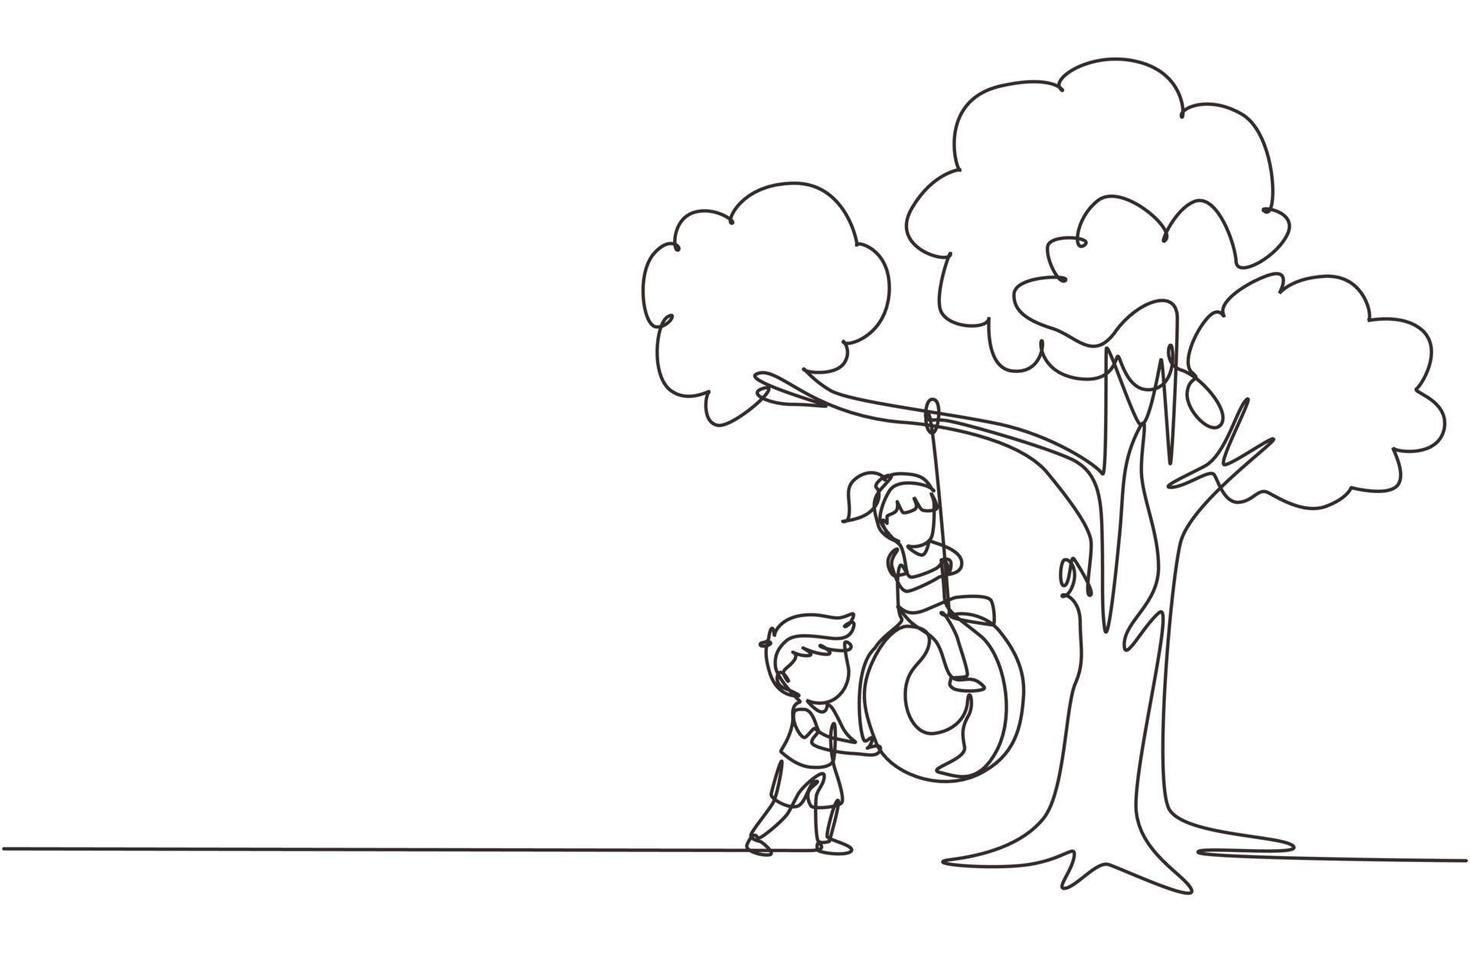 uma única linha desenhando meninos e meninas felizes brincando de balanço de pneu debaixo da árvore. crianças balançando no pneu pendurado na árvore. crianças brincando no jardim. ilustração em vetor gráfico de desenho de linha contínua